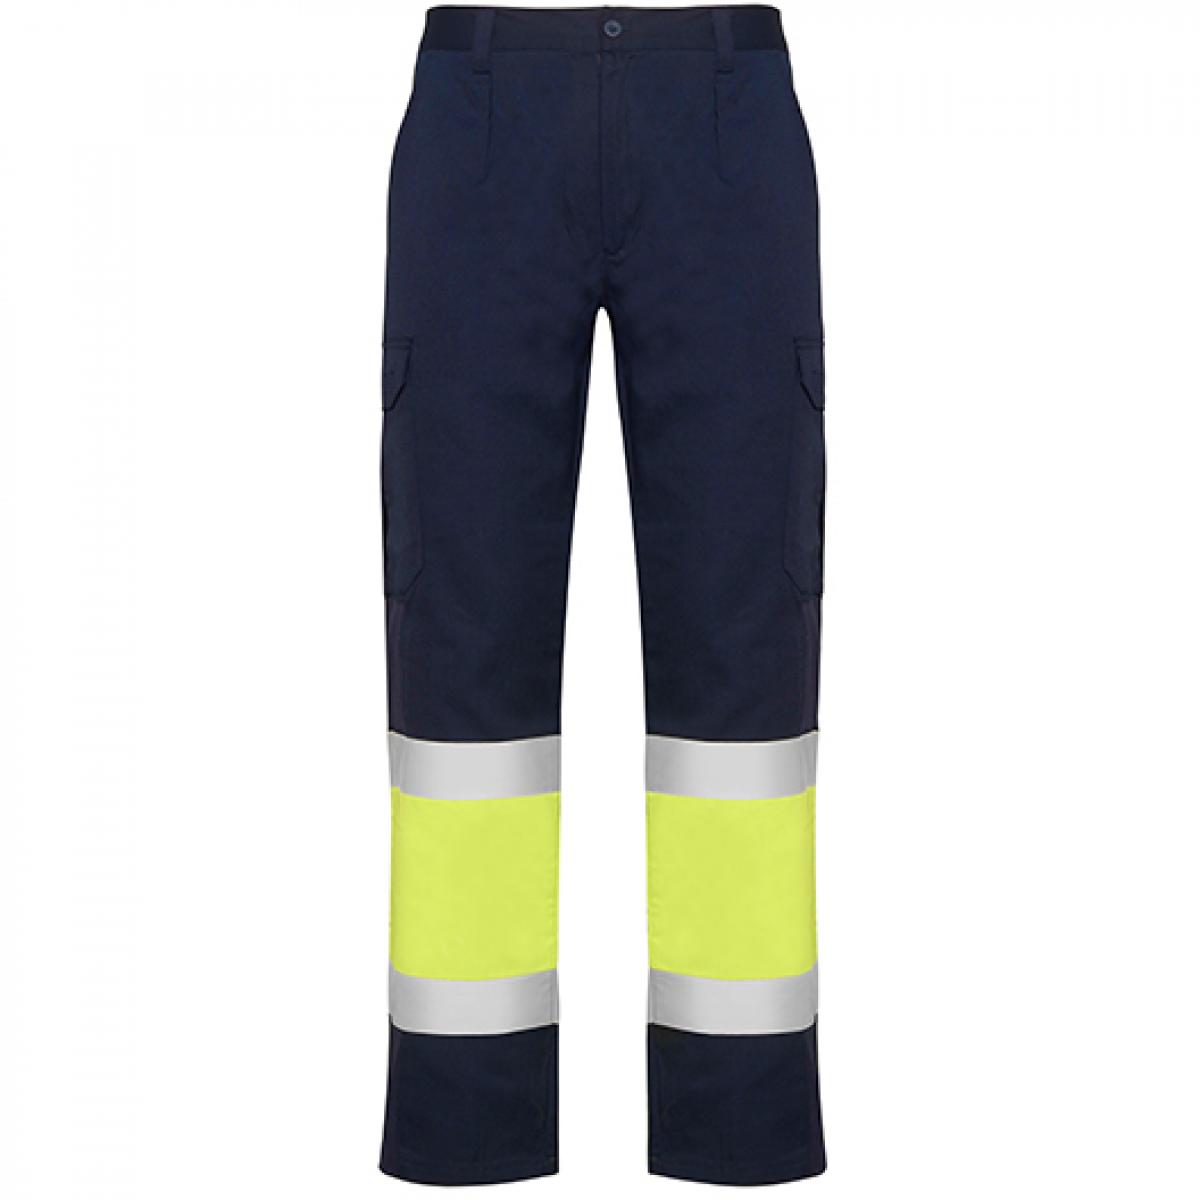 Hersteller: Roly Workwear Herstellernummer: HV9300 Artikelbezeichnung: Naos Hi-Viz Trousers - Arbeitshose mit Reflektionsstreifen Farbe: Navy Blue 55/Fluor Yellow 221